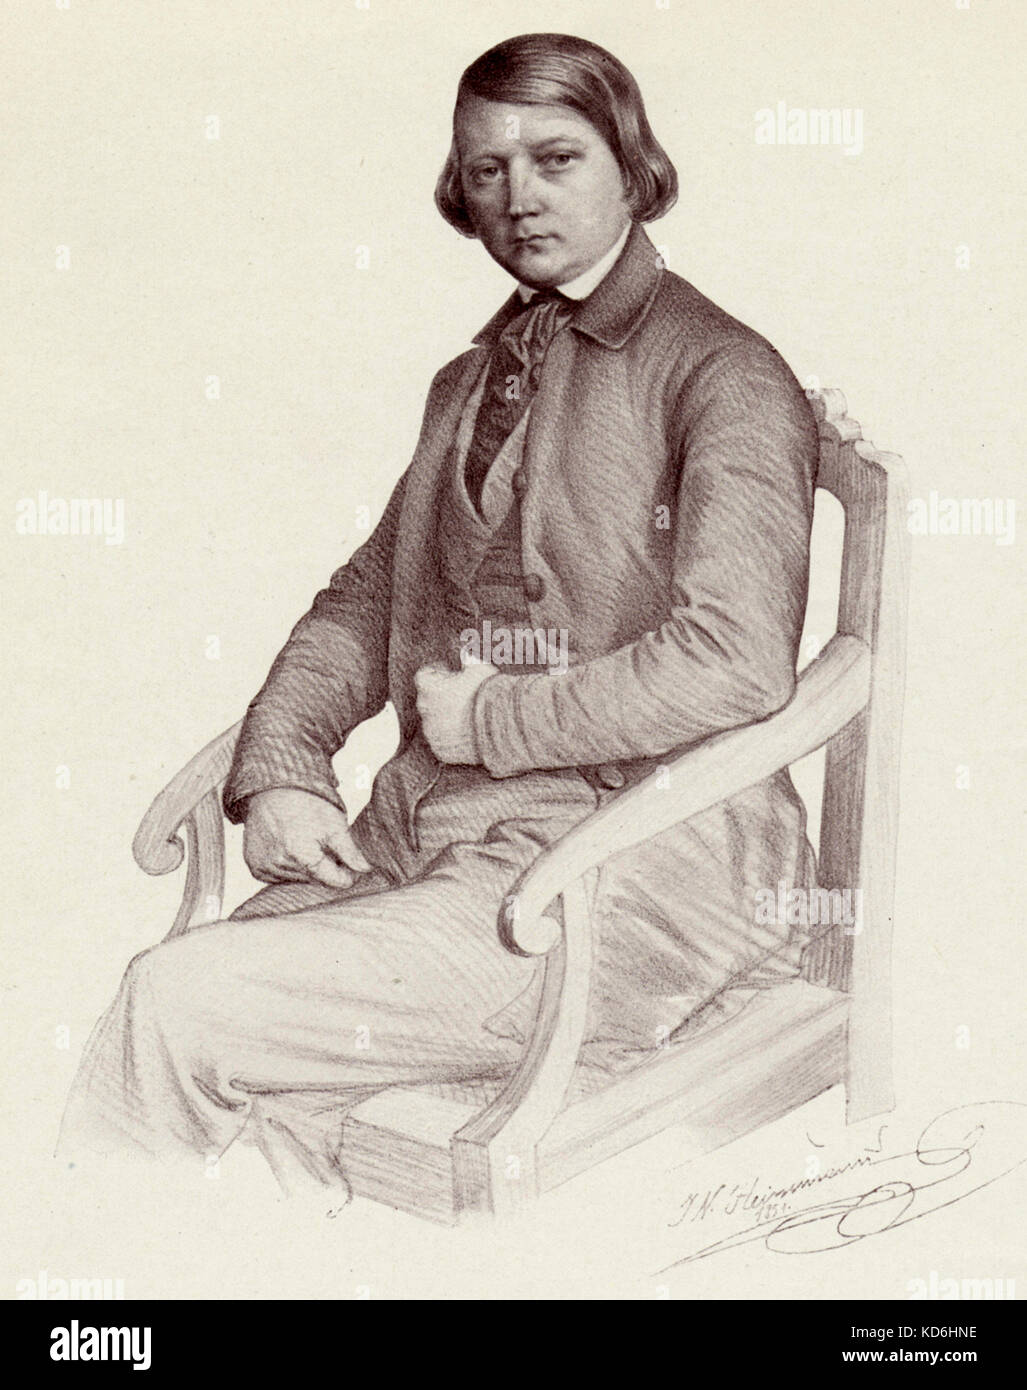 Robert Schumann, Bild von ihm in einem Stuhl sitzend, von J.n. Heinemann. Deutsche Komponist, 1810-1856 Stockfoto